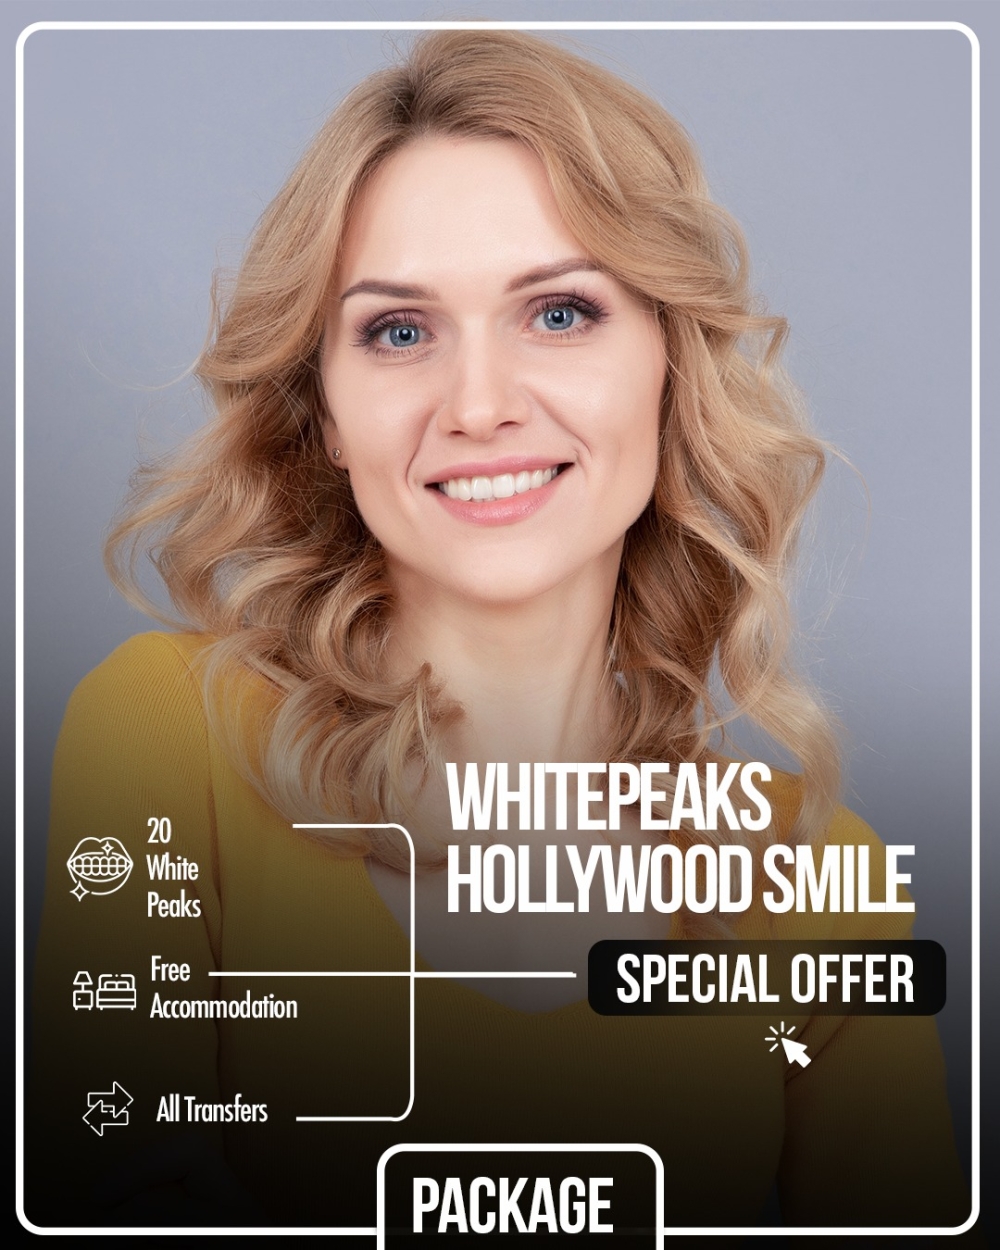 Whitepeaks Hollywood Smile img